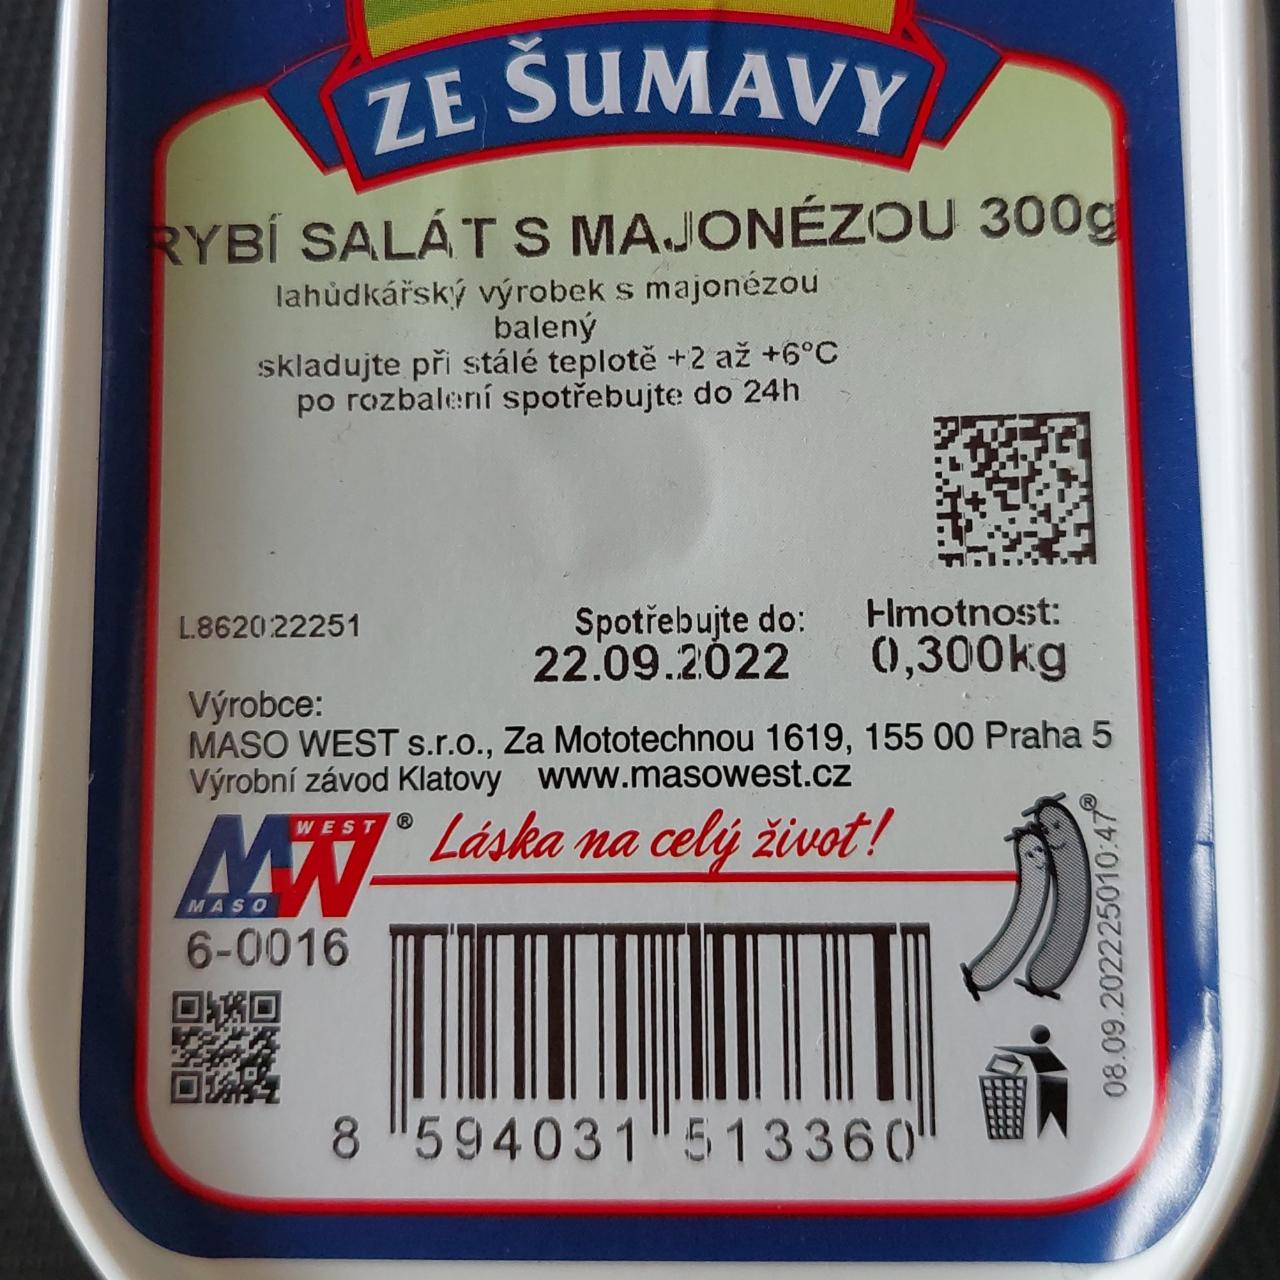 Fotografie - Rybí salát s majonézou Ze Šumavy